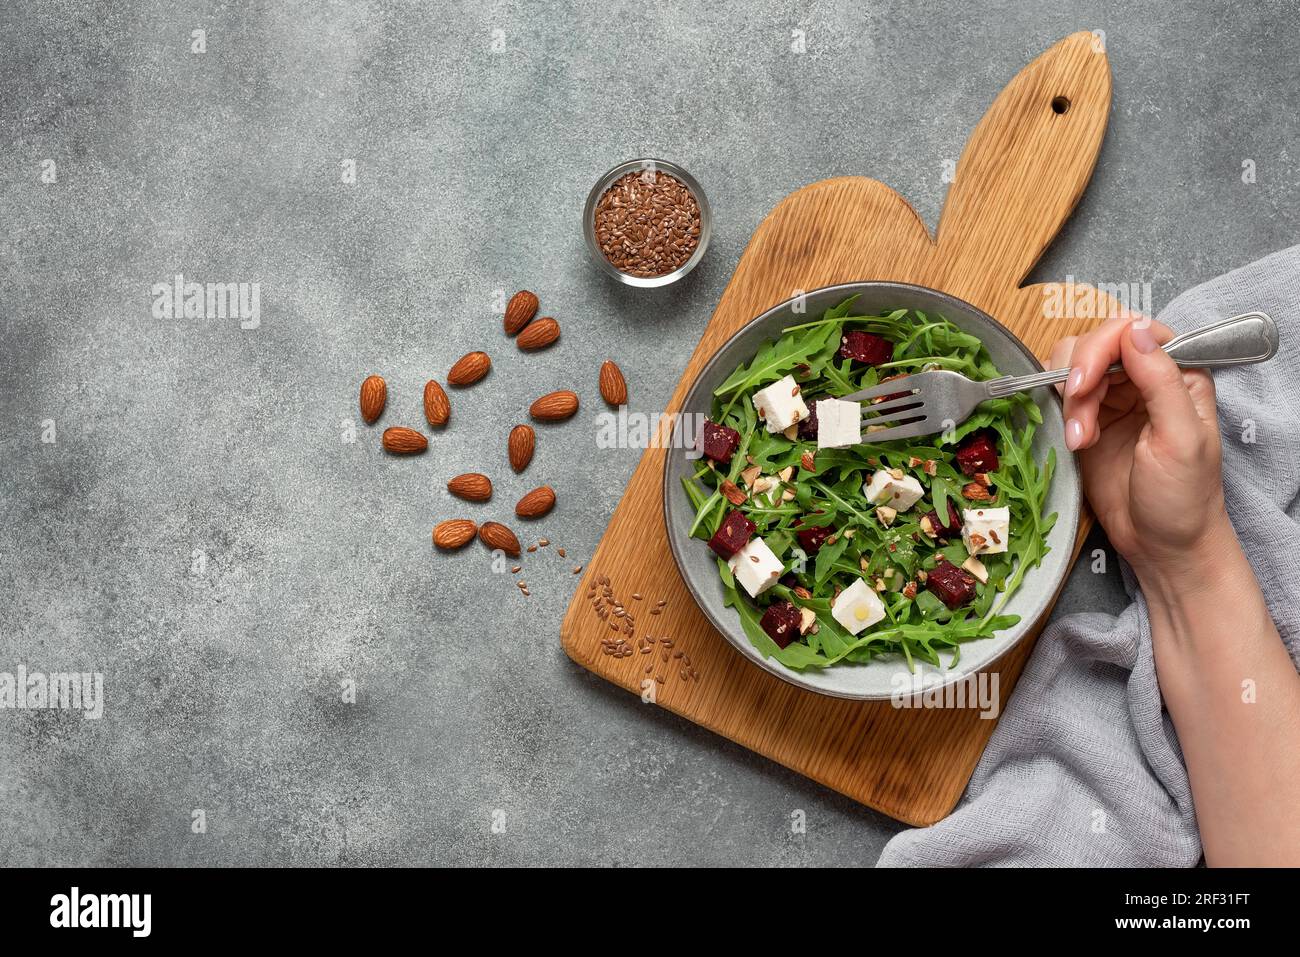 Donna che mangia insalata sana. Ciotola con insalata di barbabietole con rucola e feta. Sfondo grigio cemento. Vista dall'alto, base piatta. Foto Stock